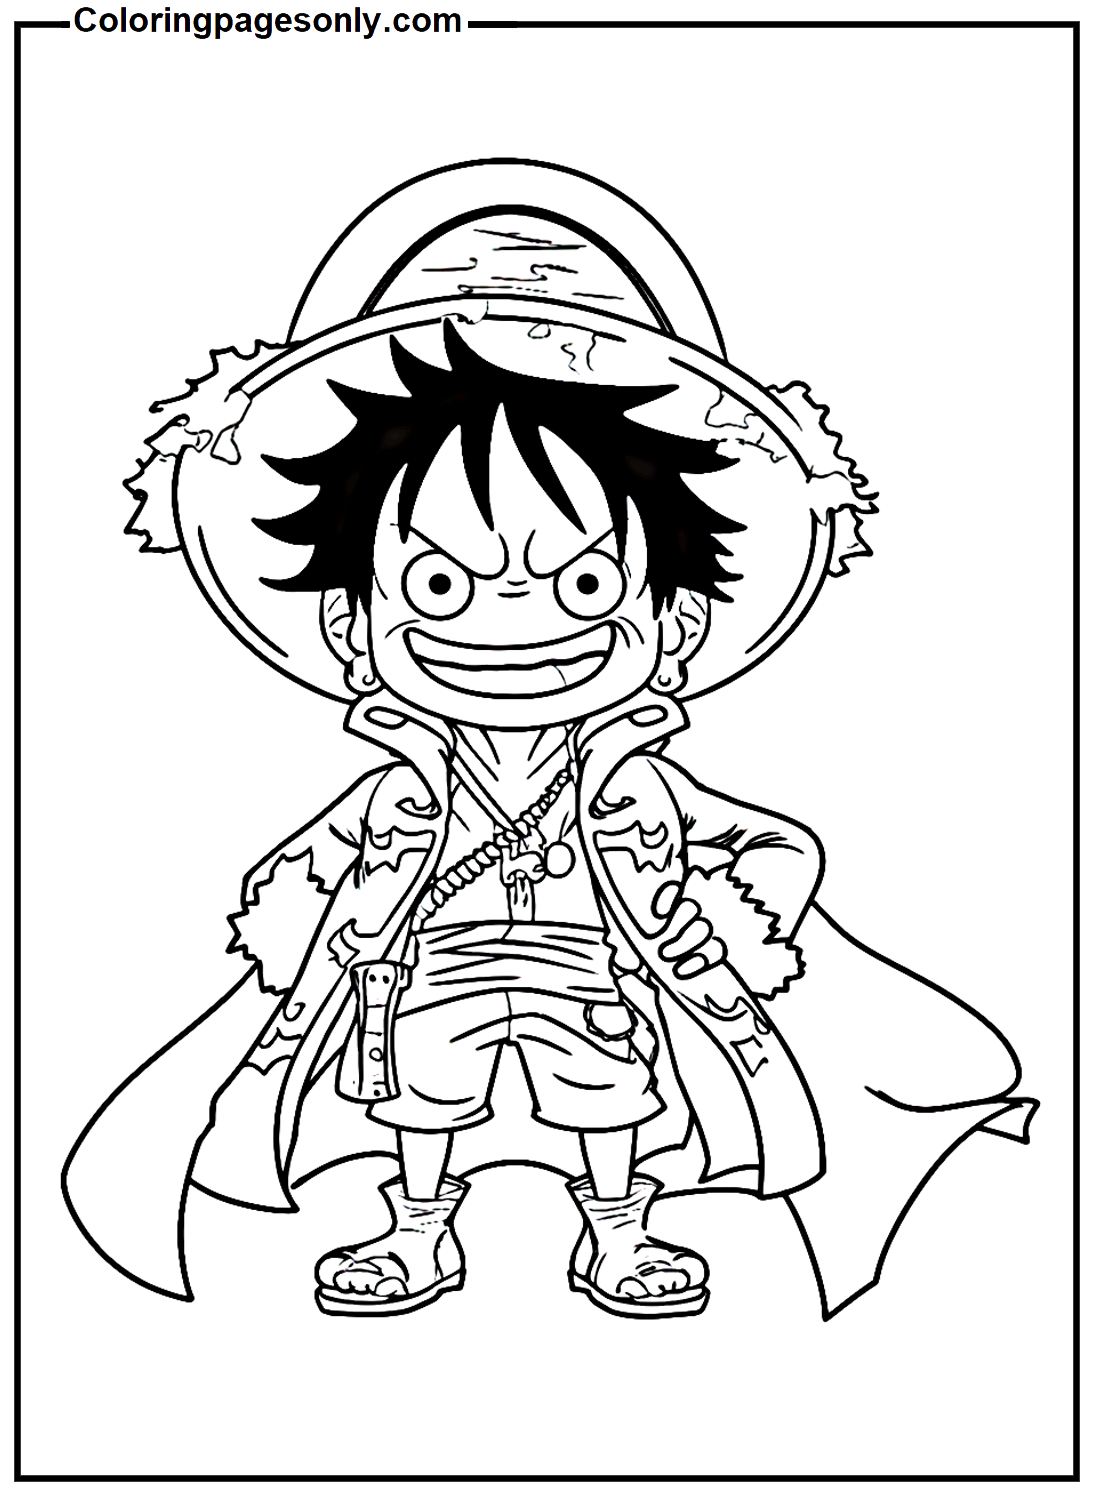 Pequeno Luffy com capa de pirata from Luffy